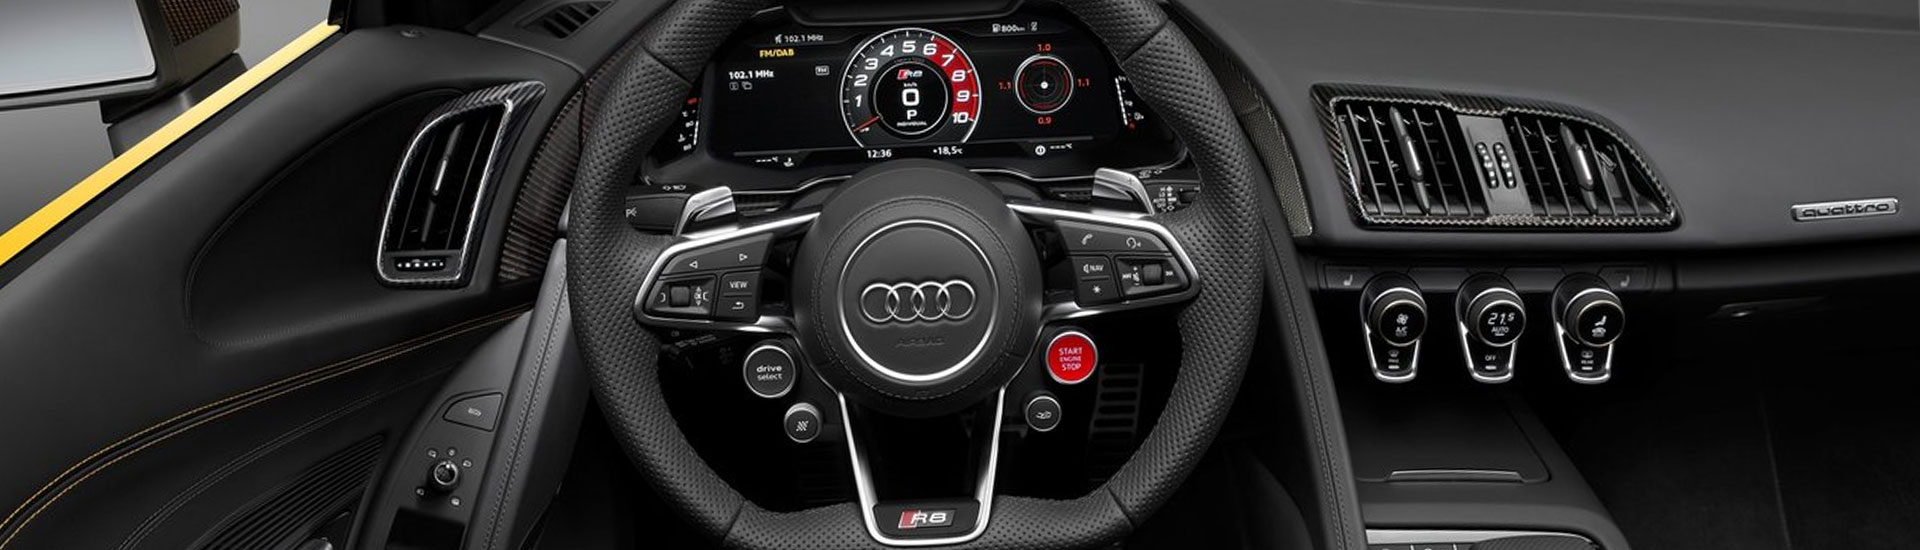 Audi R8 Custom Dash Kits